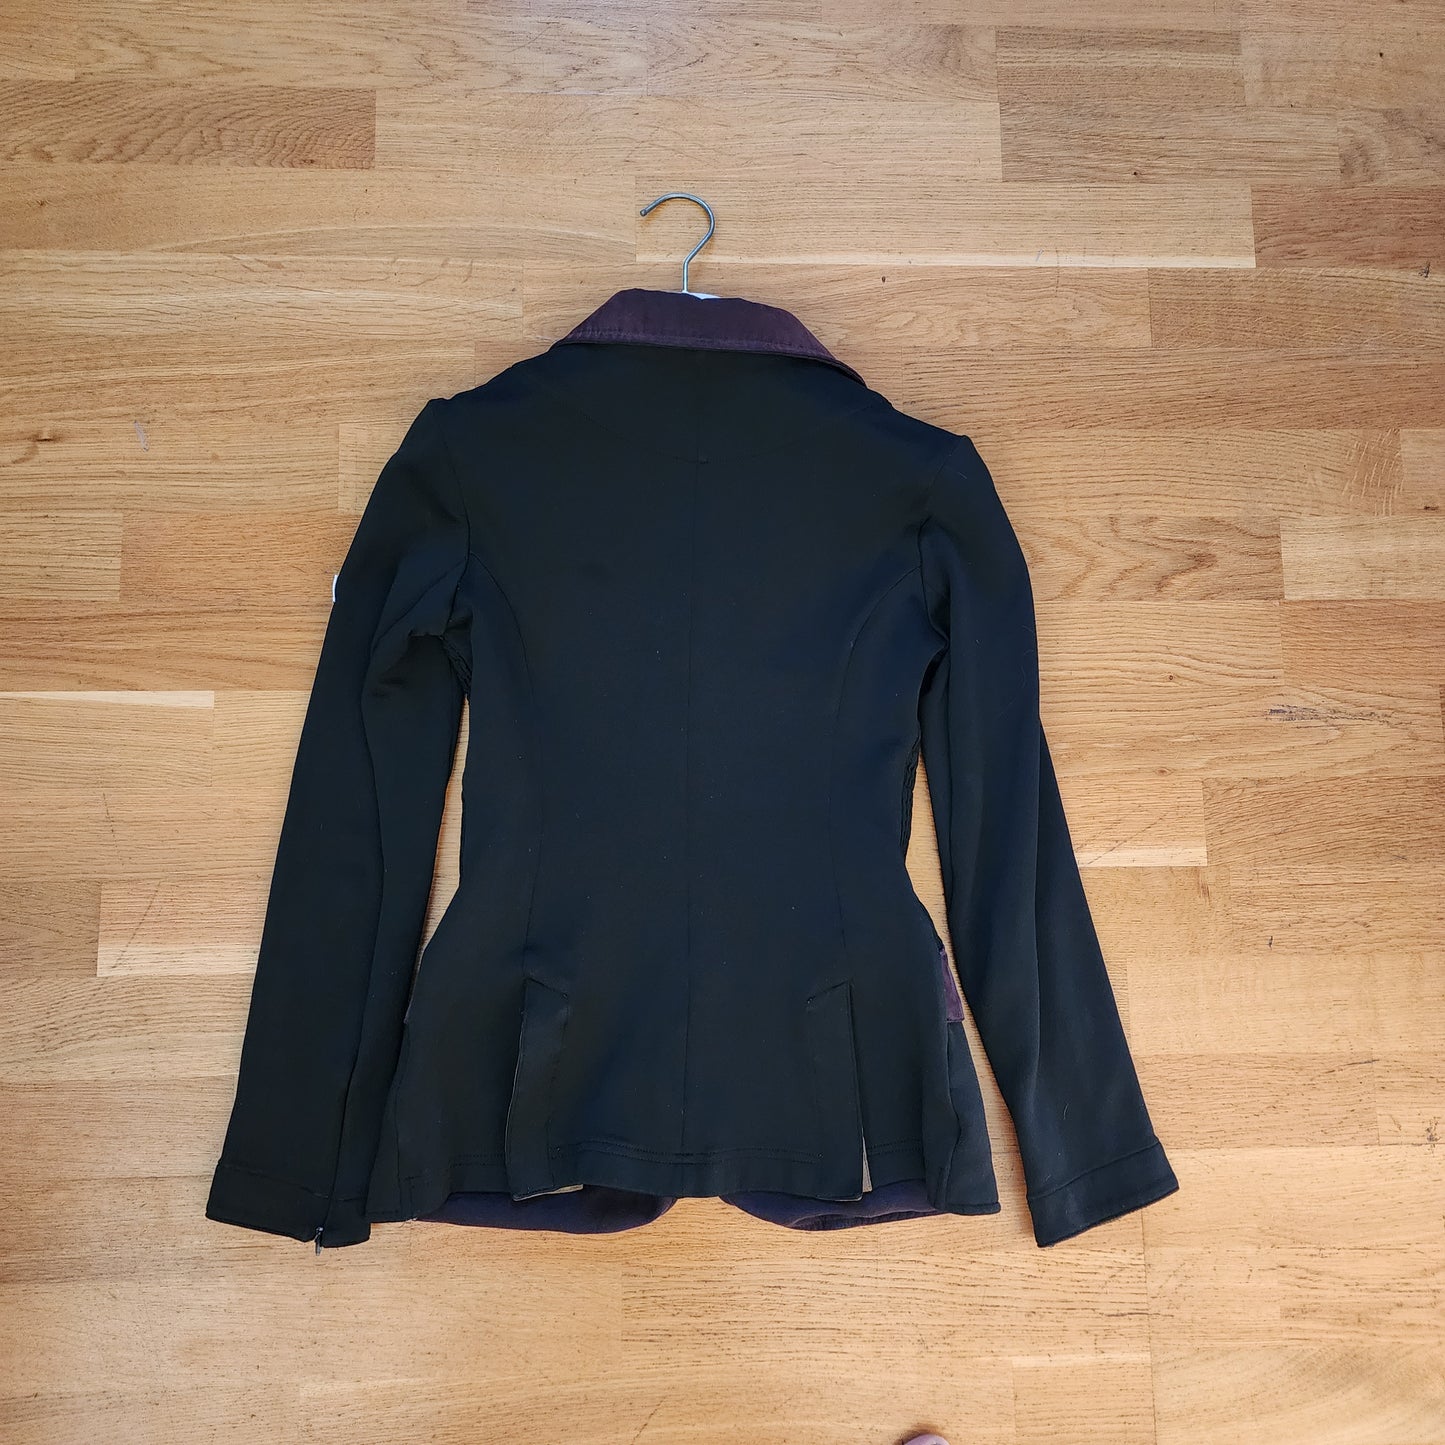 Animo black Show Jacket ladies size 6 (i38) / girls 12